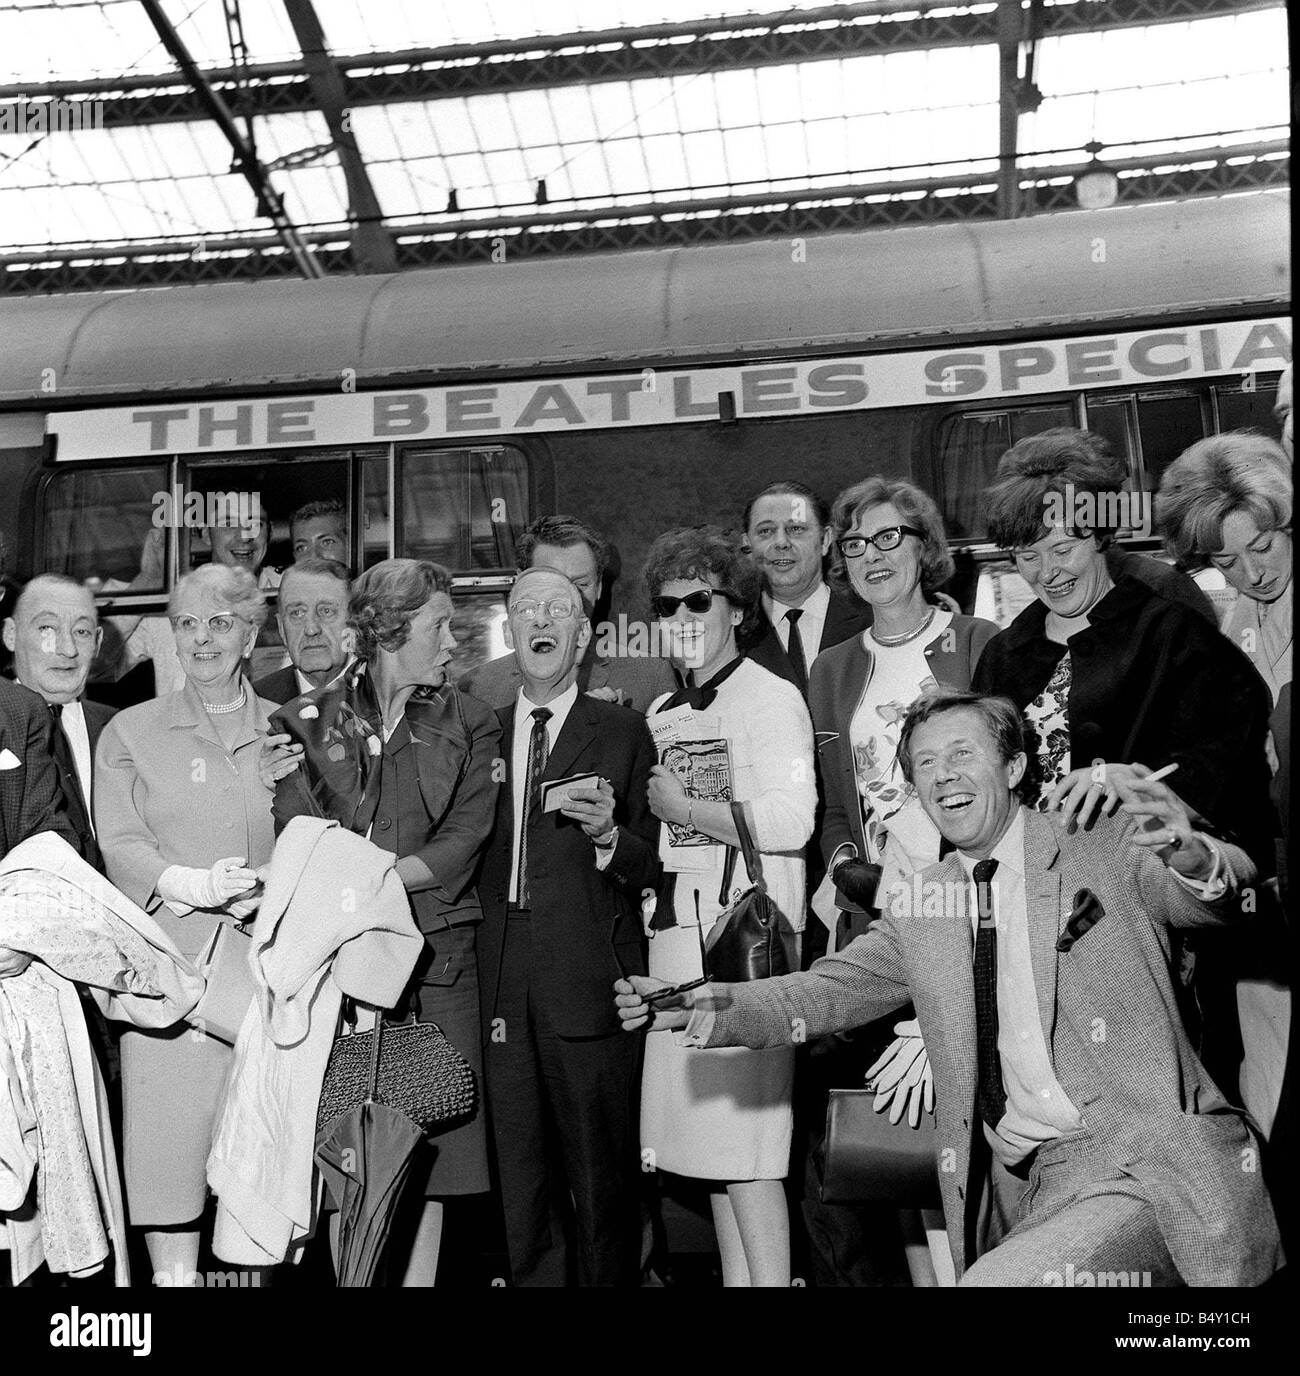 Gruppo pop The Beatles Luglio 1964 Paul McCartney Ringo Starr John Lennon George Harrison Beatles arrivano all'Aeroporto di Liverpool per la premiere del nord di una dura giornata s notte folle di appassionati che sono in attesa di vedere i Beatles Foto Stock